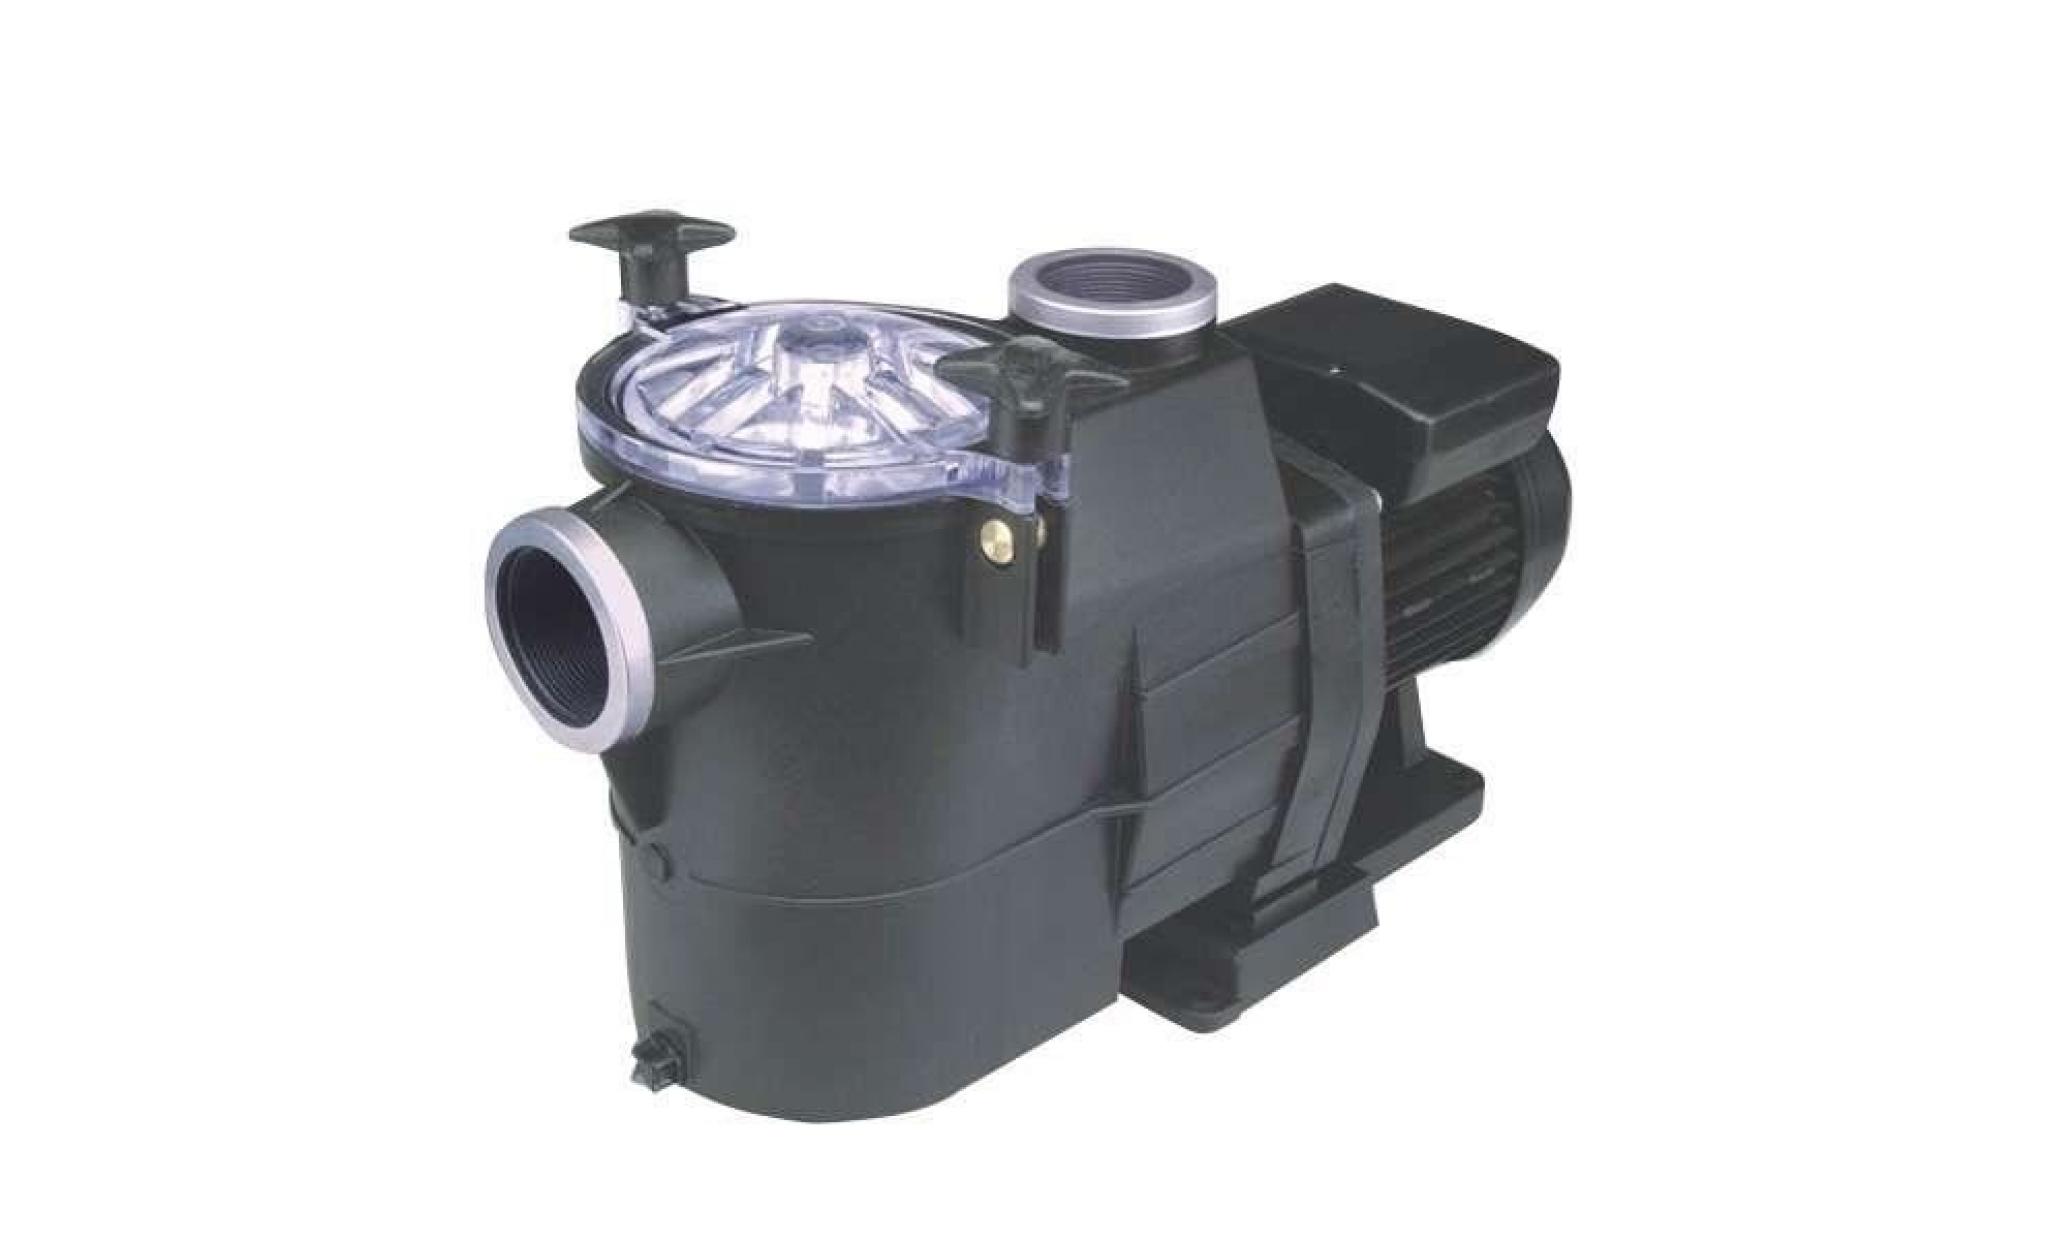 pompe filtration astral europa 0,50 cv mono 7,5 m3/h